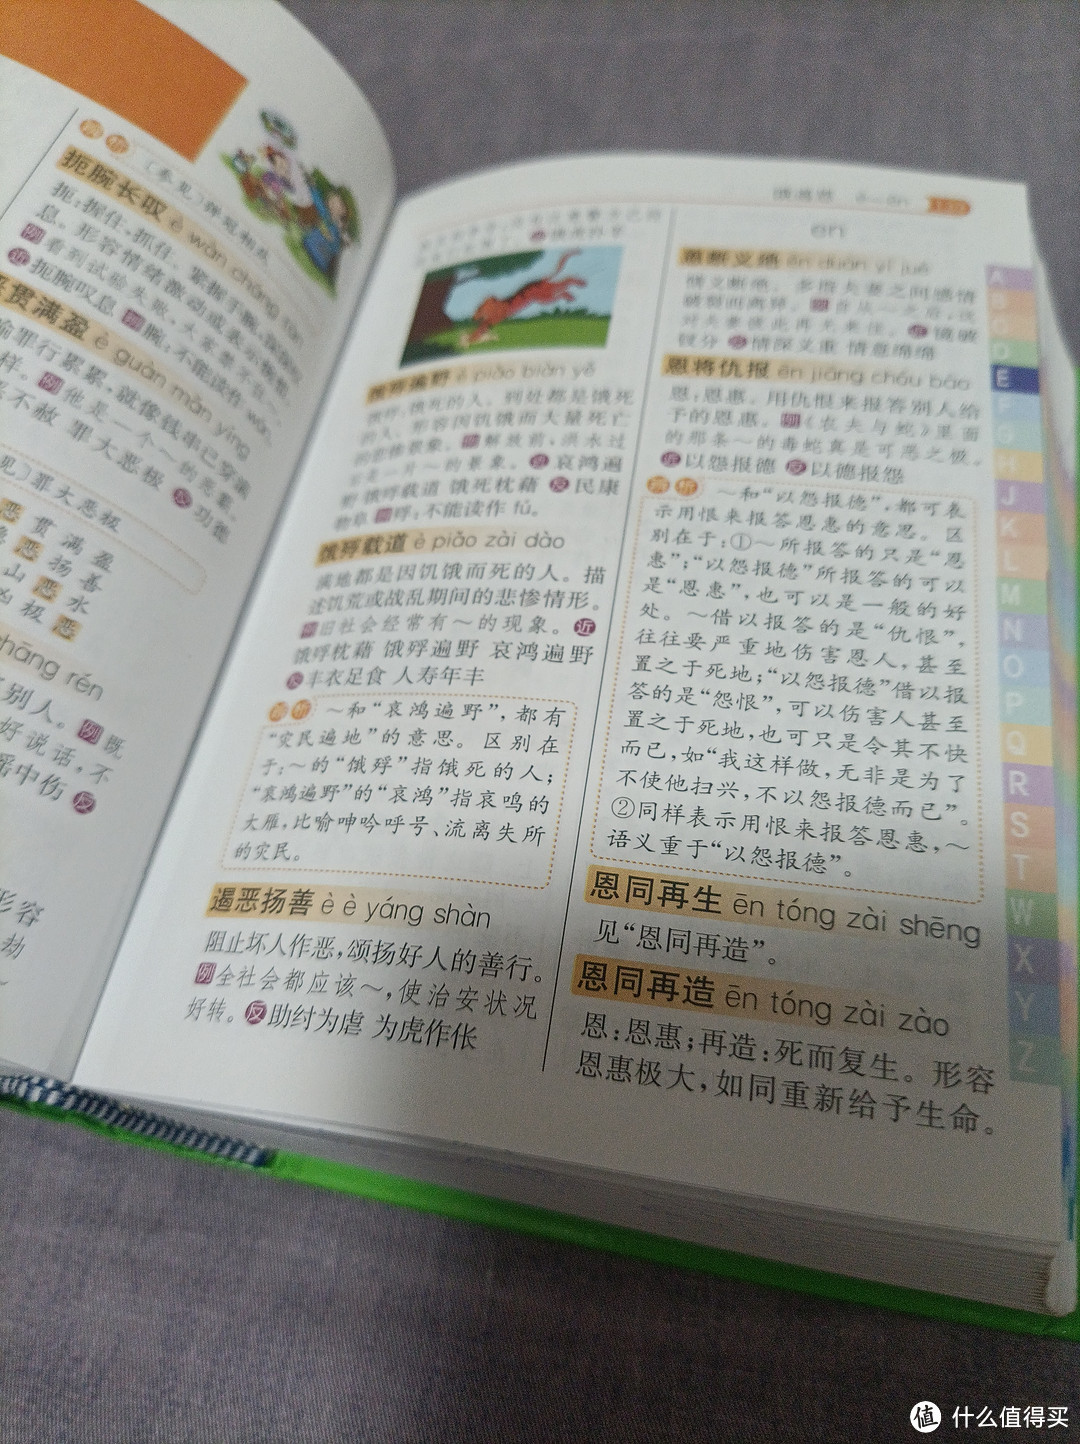 很有意思的成语学习书籍，彩图版的成语词典。